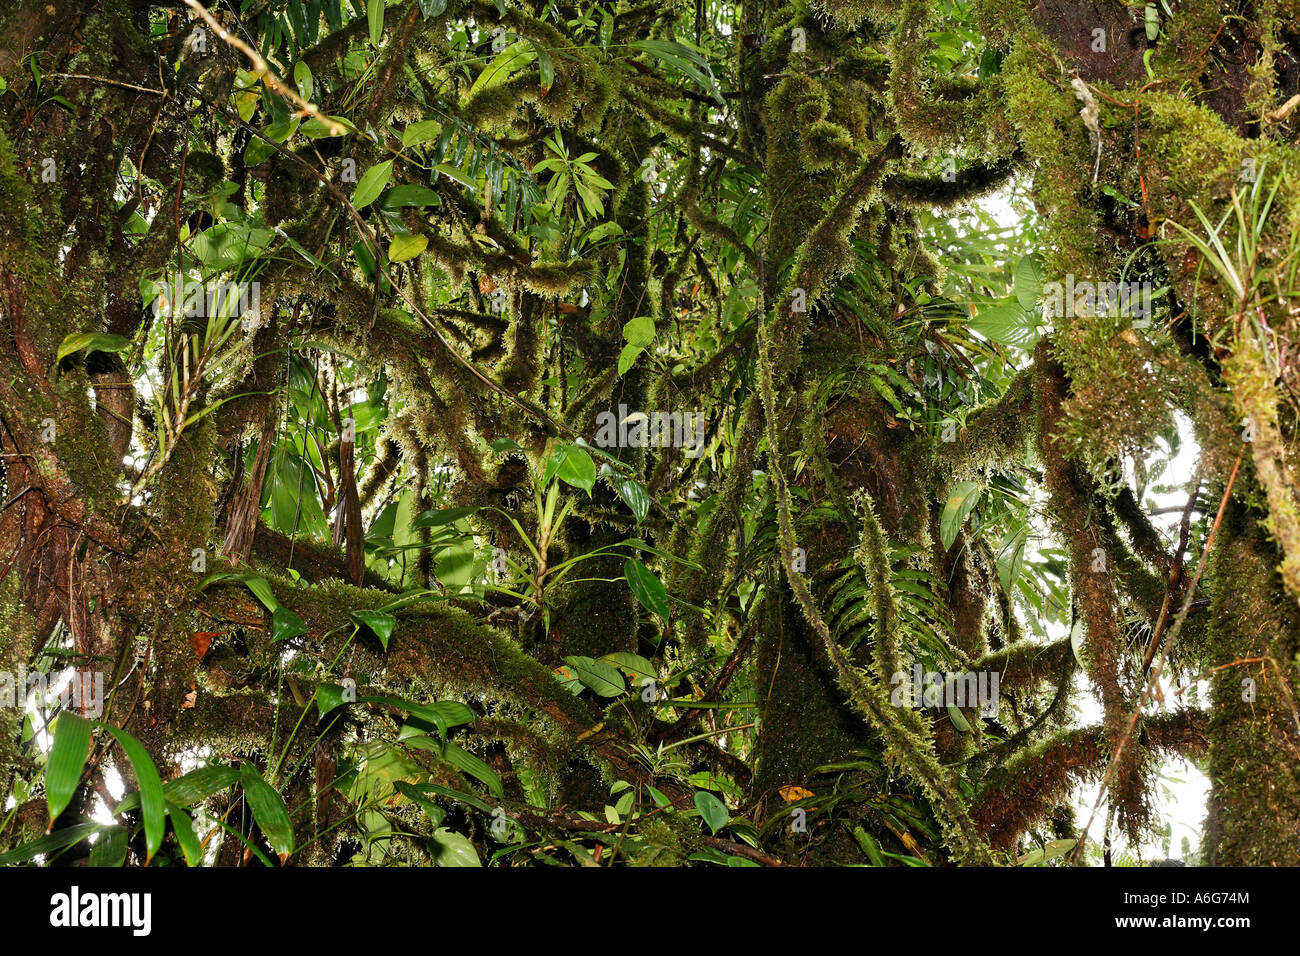 La foresta pluviale, rara avis, Las Horquetas, Costa Rica Foto Stock